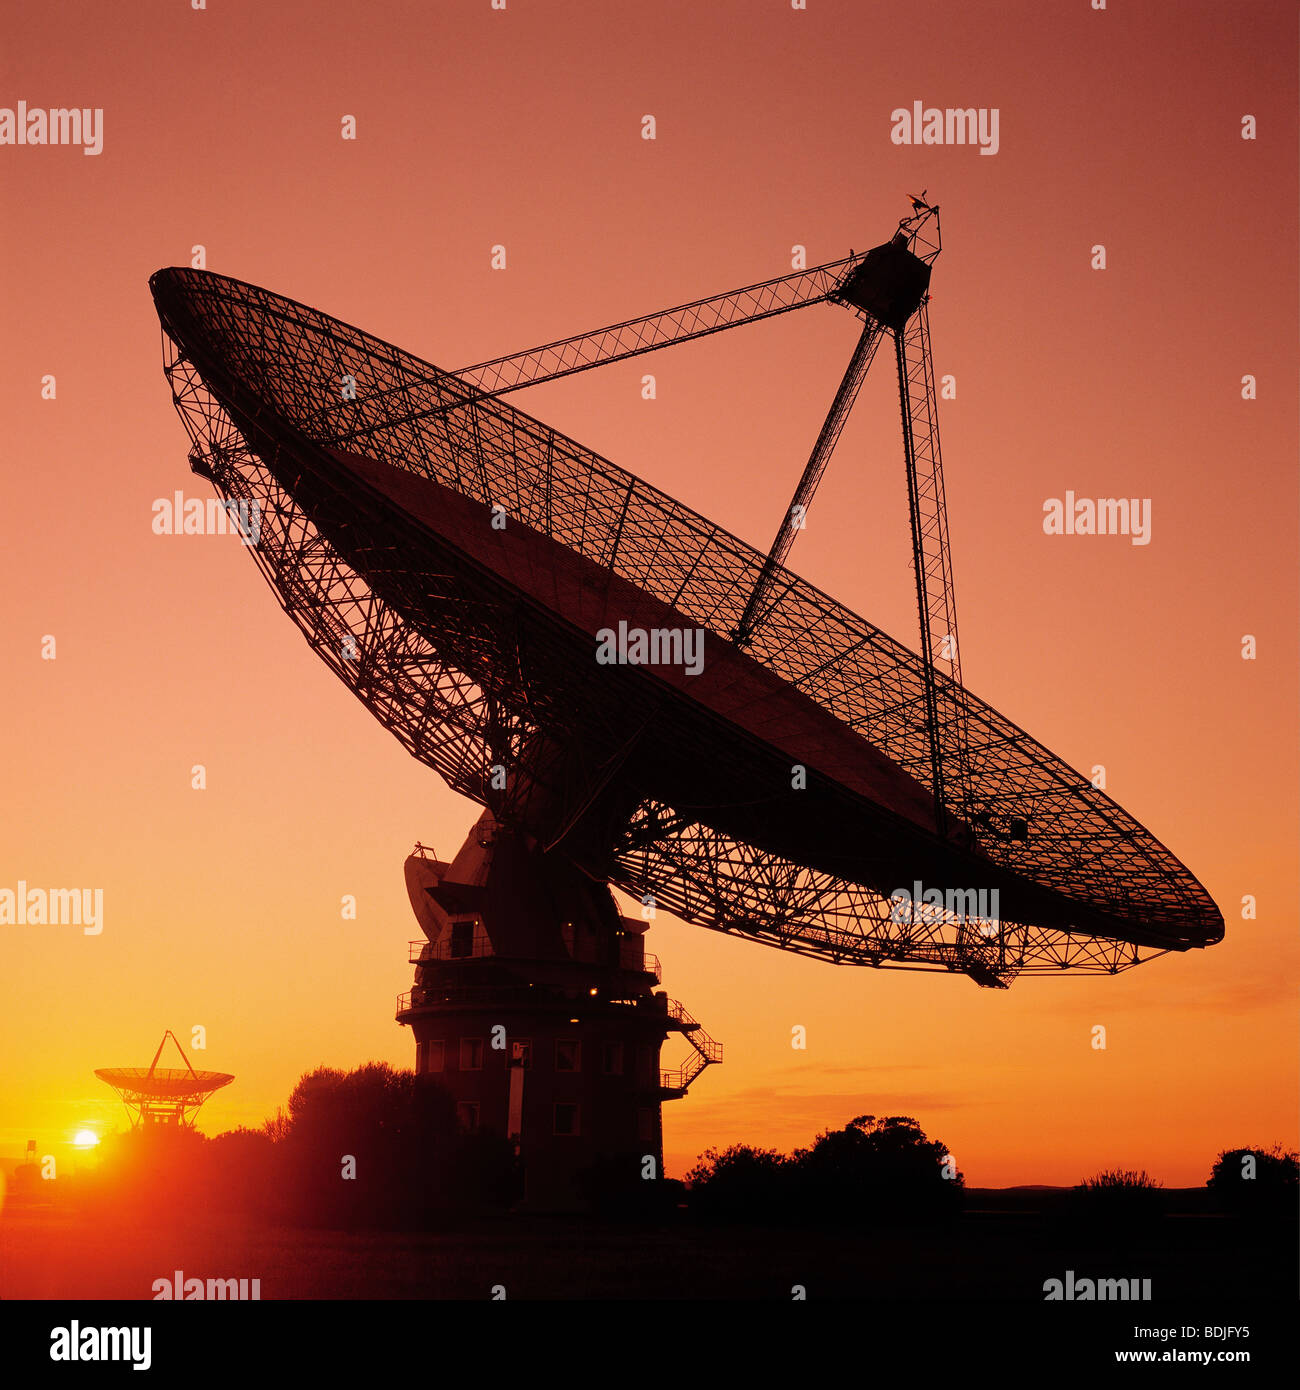 Radioteleskop, Satelliten Schüssel, Sonnenuntergang Silhouette erhalten Stockfoto